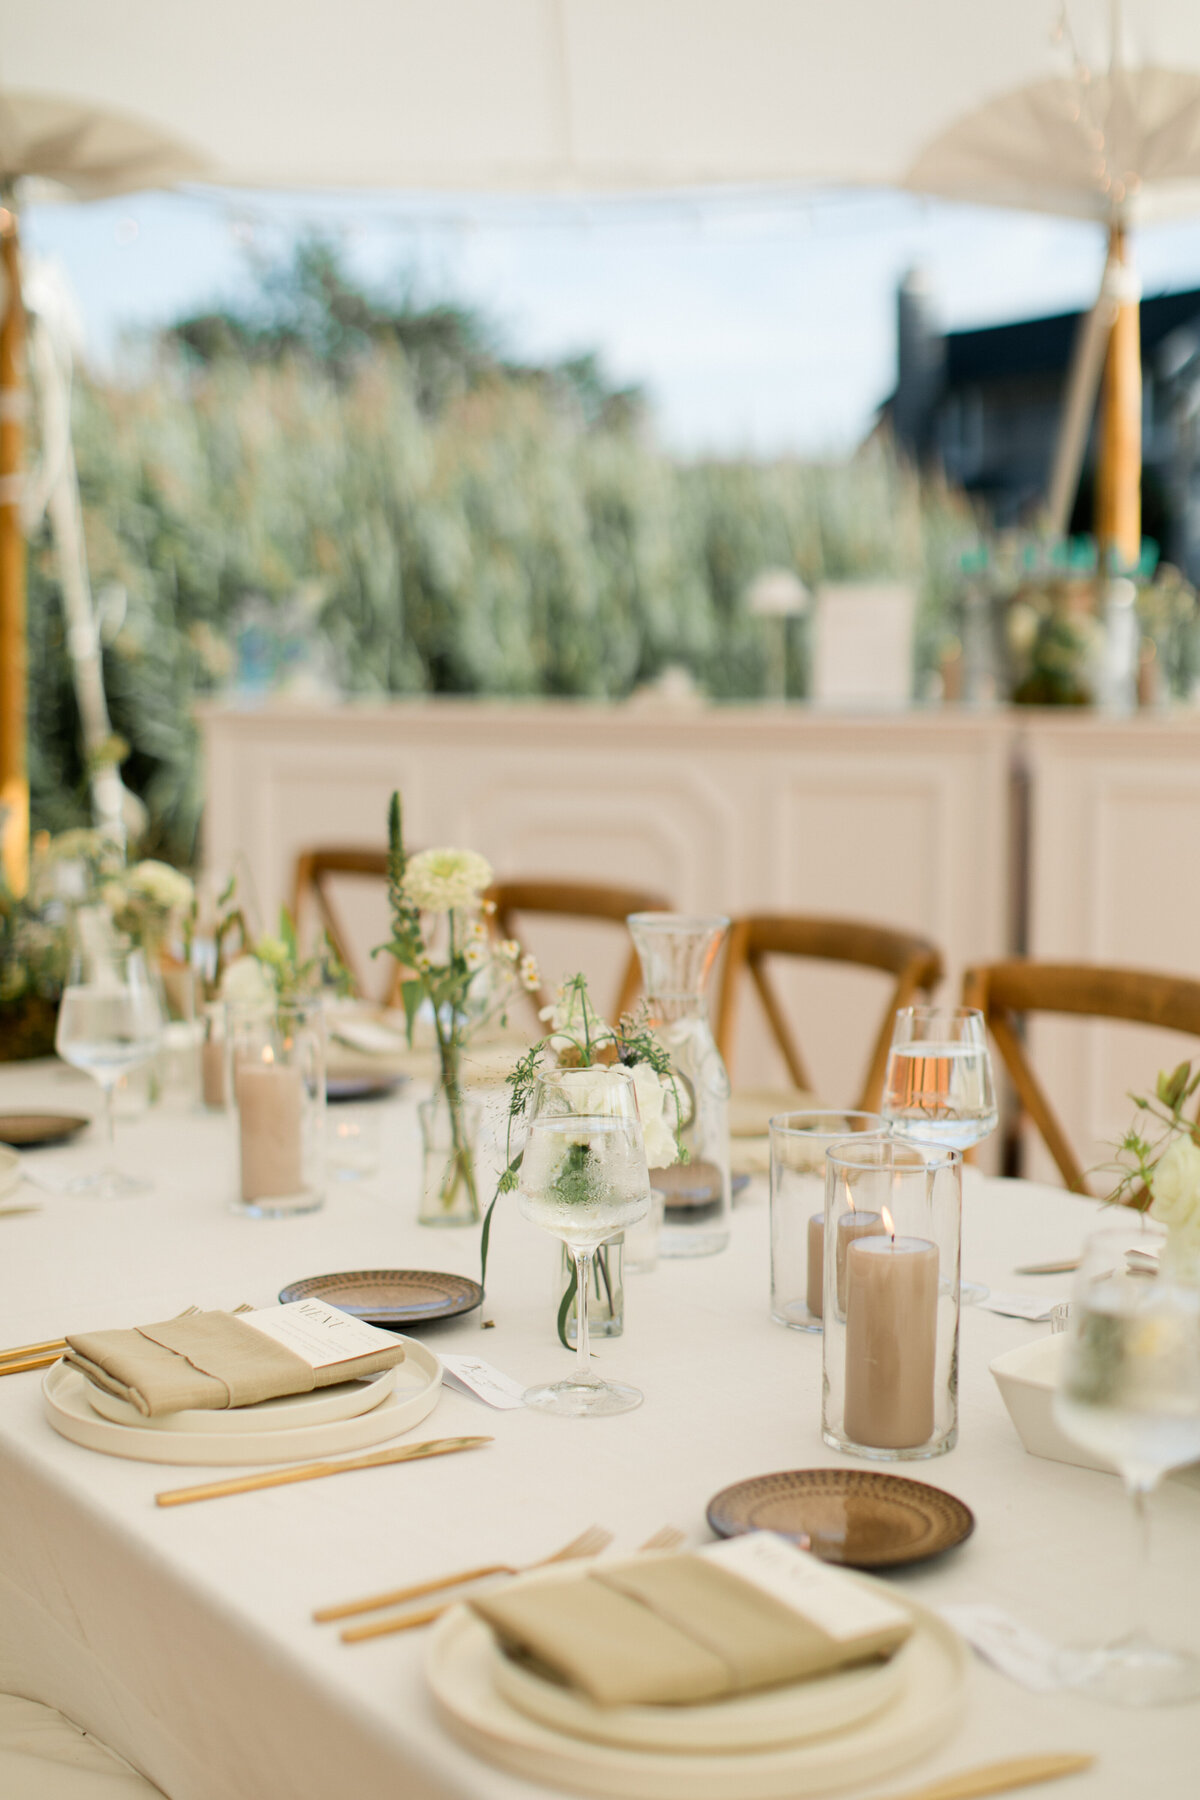 gold-brushed-flatware-dainty-wild-flower-arrangements-ct-wedding-reception